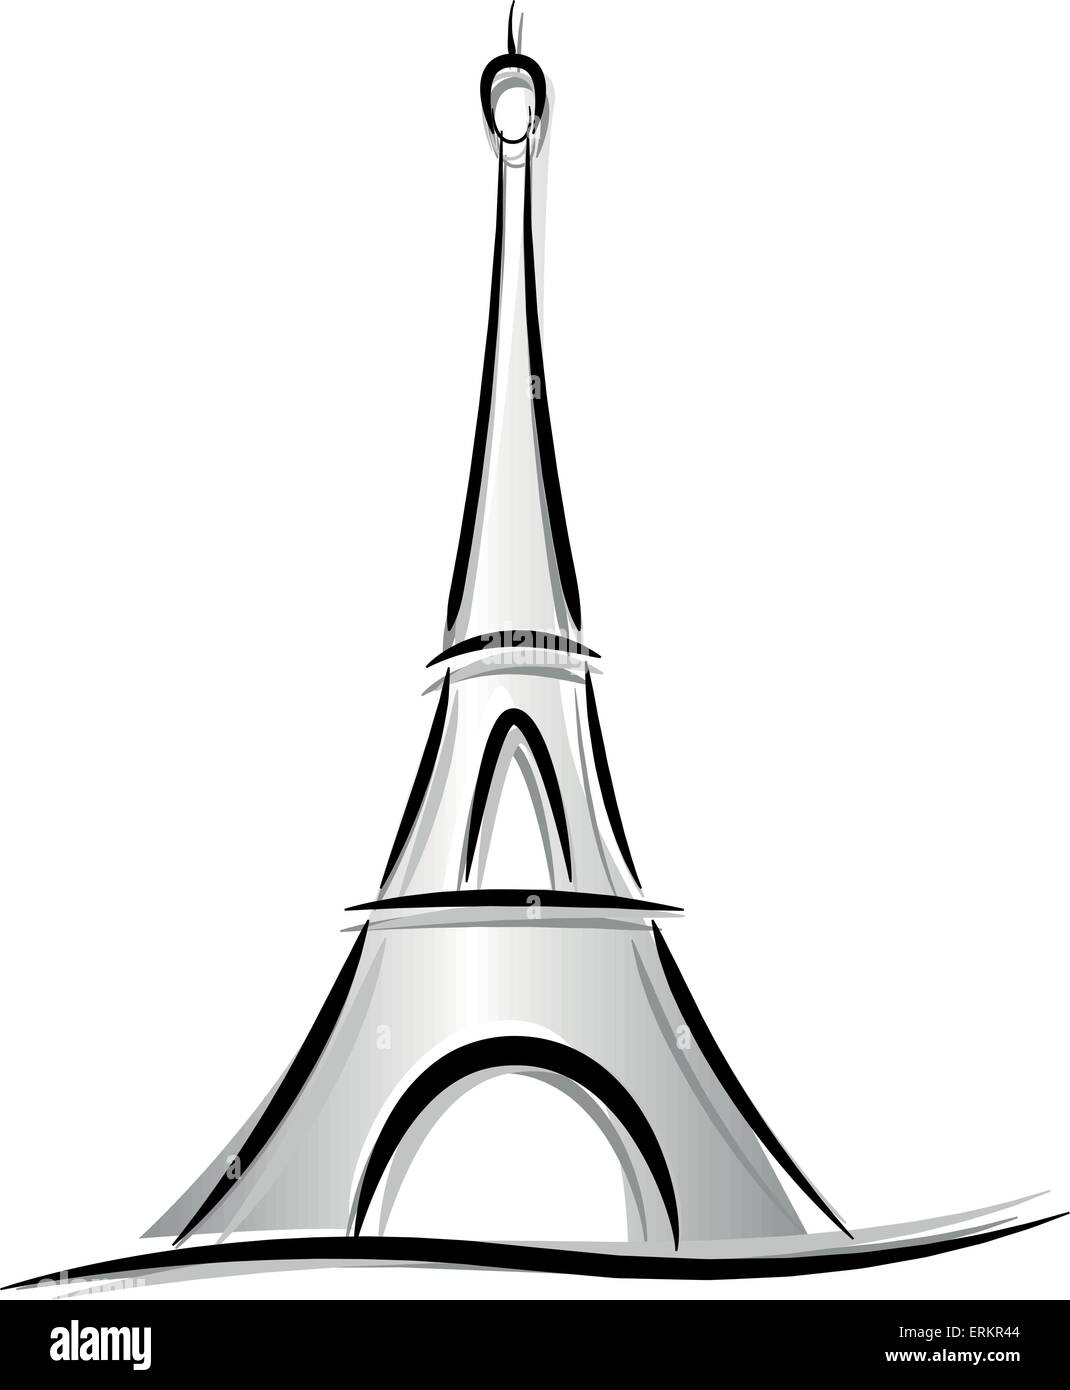 Dessin vectoriel de tour eiffel sur fond blanc Illustration de Vecteur